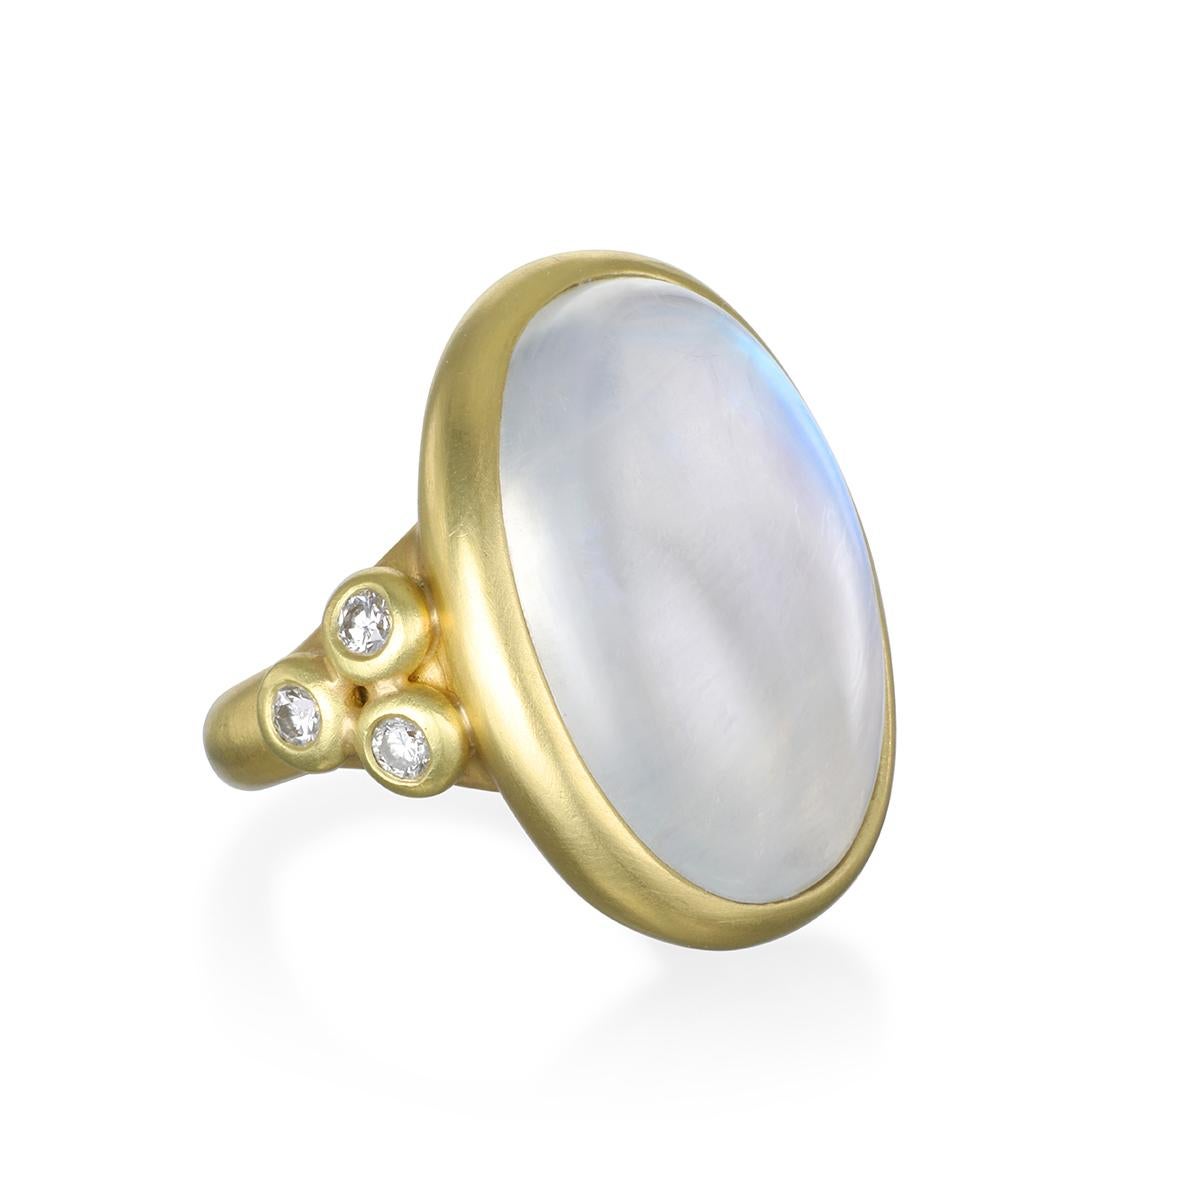 Dieser runde Regenbogenmondstein mit seinen drei seitlichen Diamanten wurde von der Designerin Faye Kim in 18 Karat Gold gefasst und reflektiert ein bläuliches, milchiges Licht, das mit dem Licht des Mondes verglichen wird. Die Form, der Schliff und